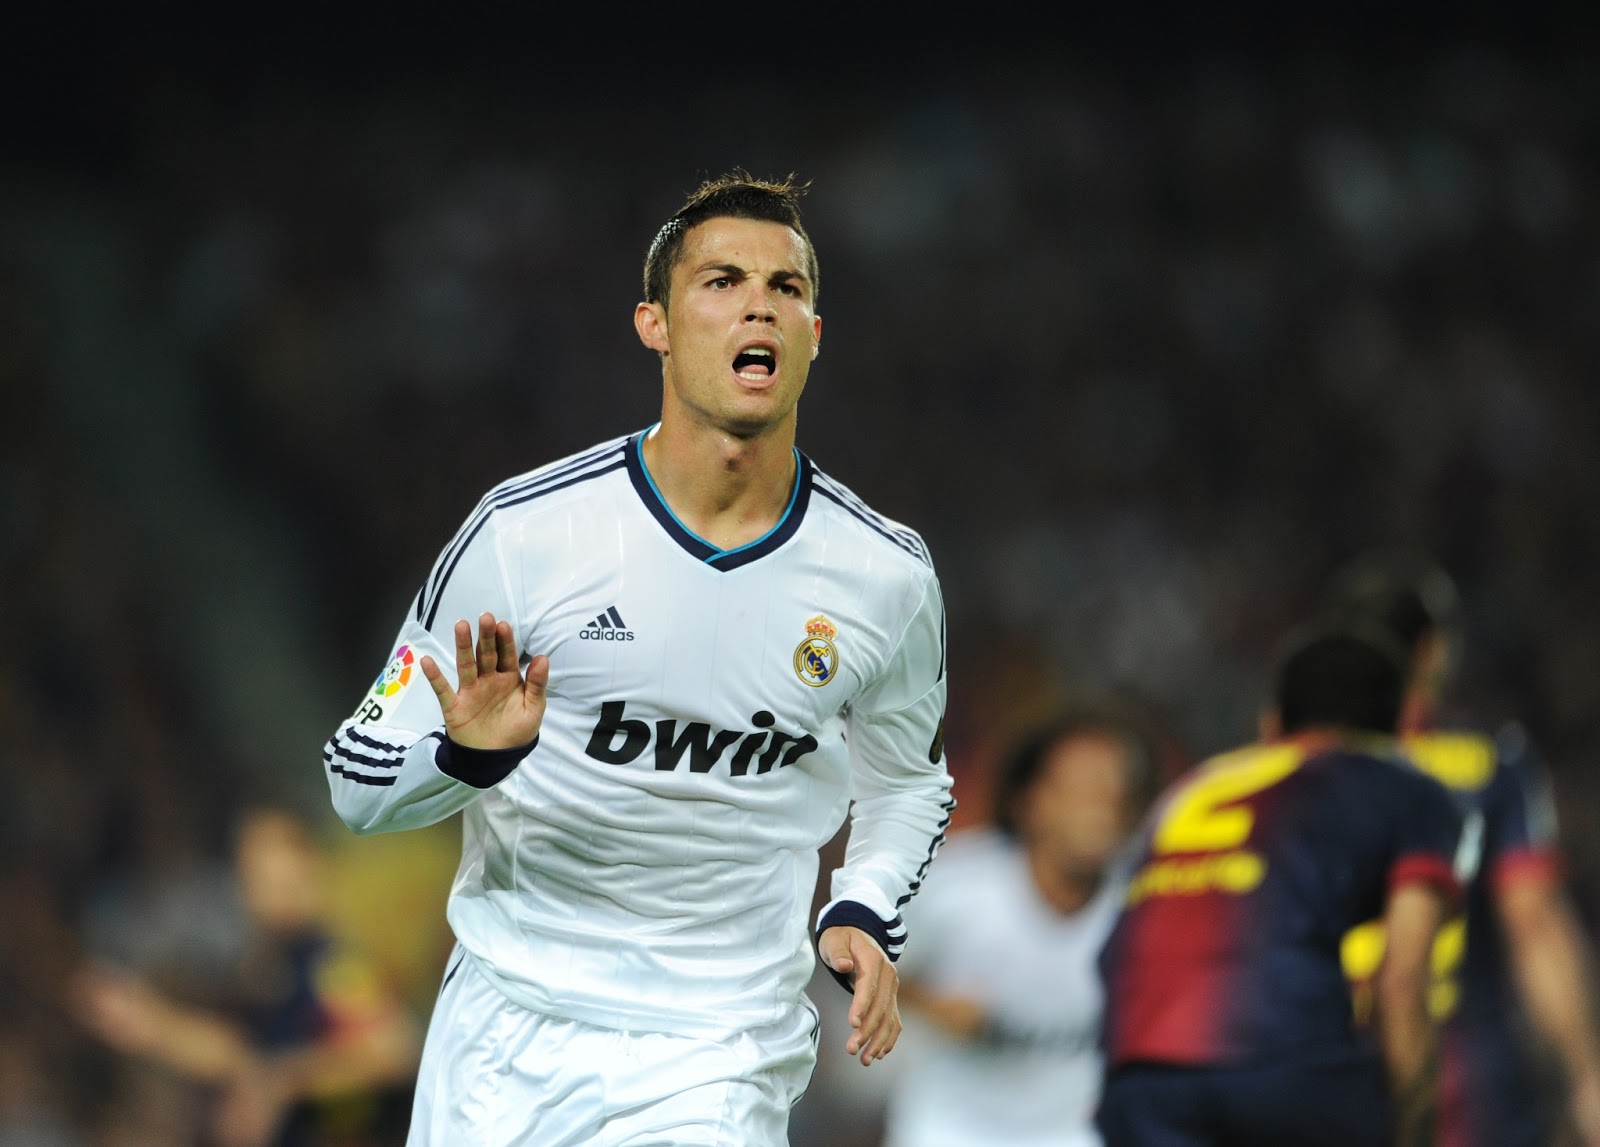 Cristiano-Ronaldo-2013-HD-Wallpaper-Picture-Real-Madrid-Calma-Calma